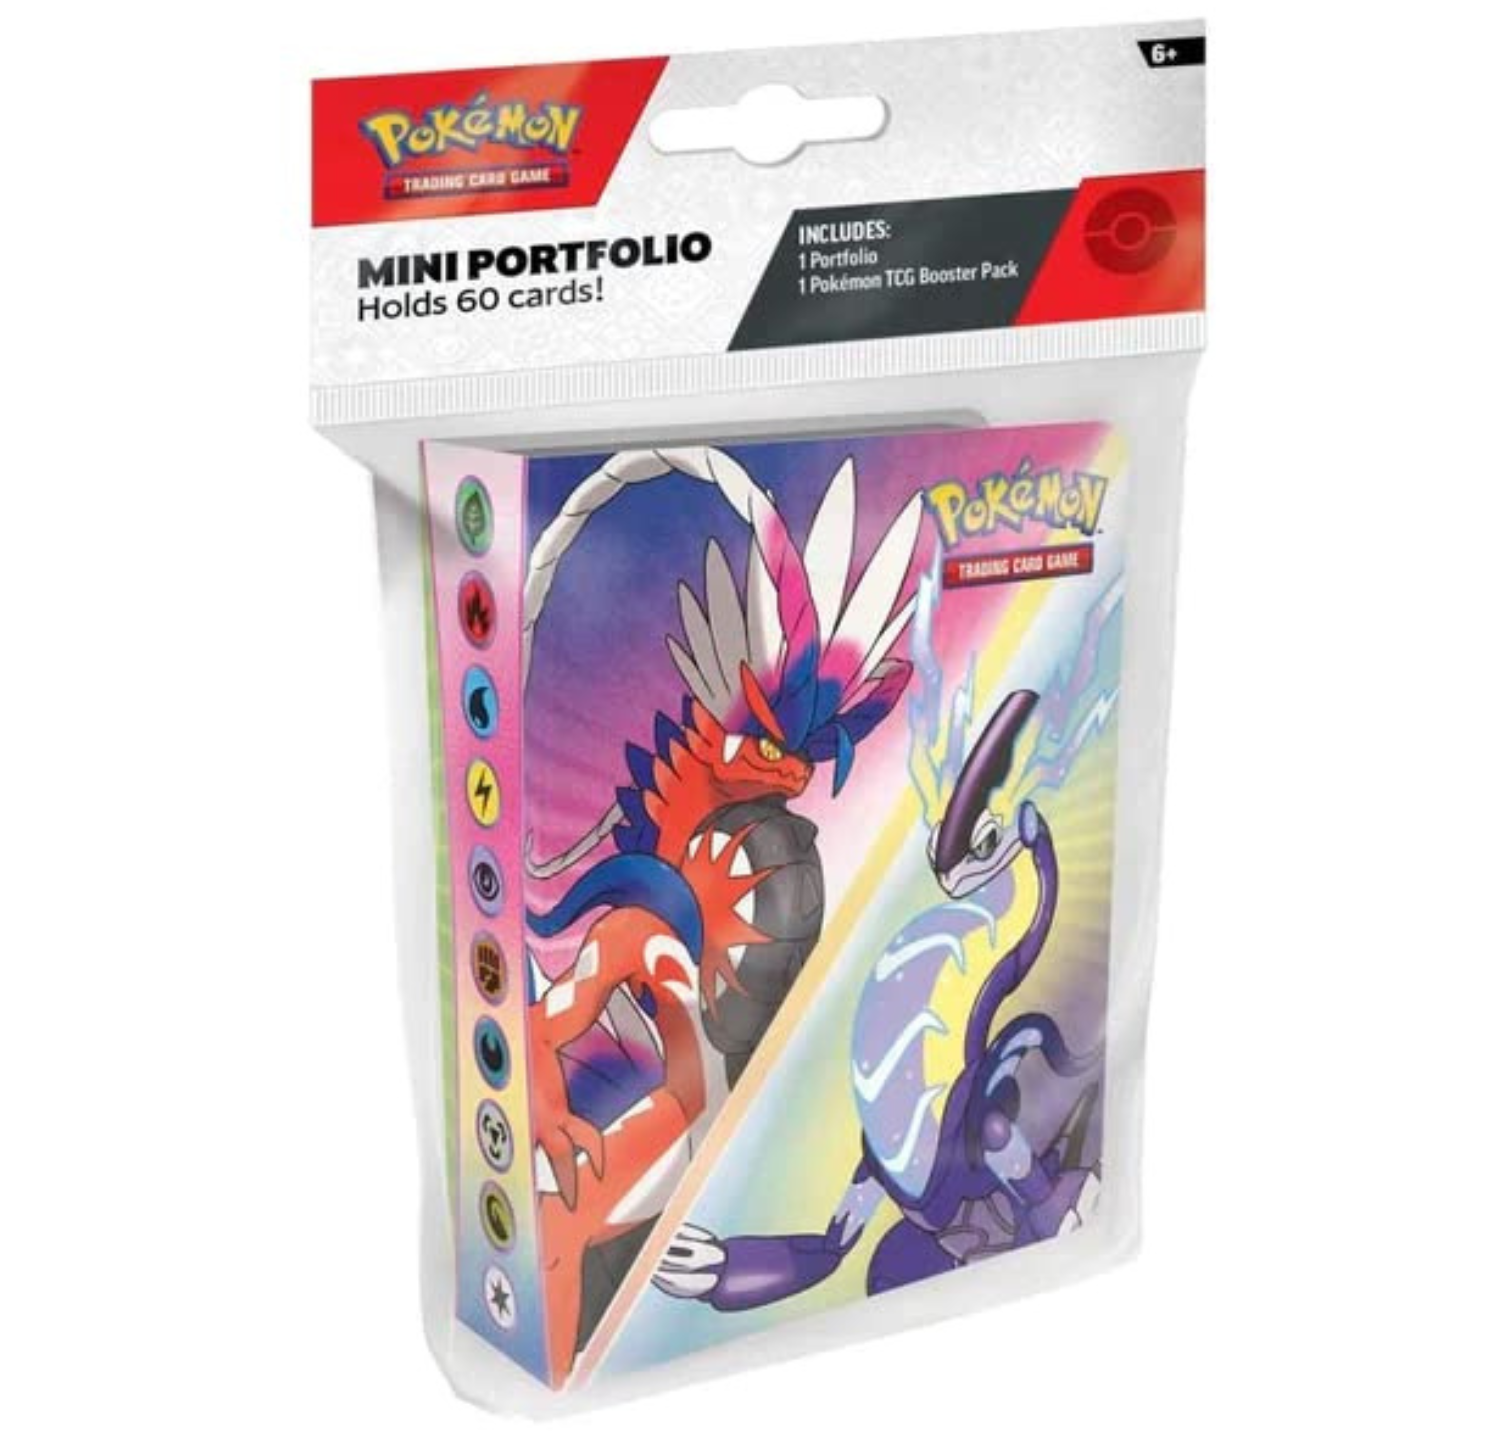 Pokemon Scarlet & Violet Mini Portfolio + 1 Booster Pack